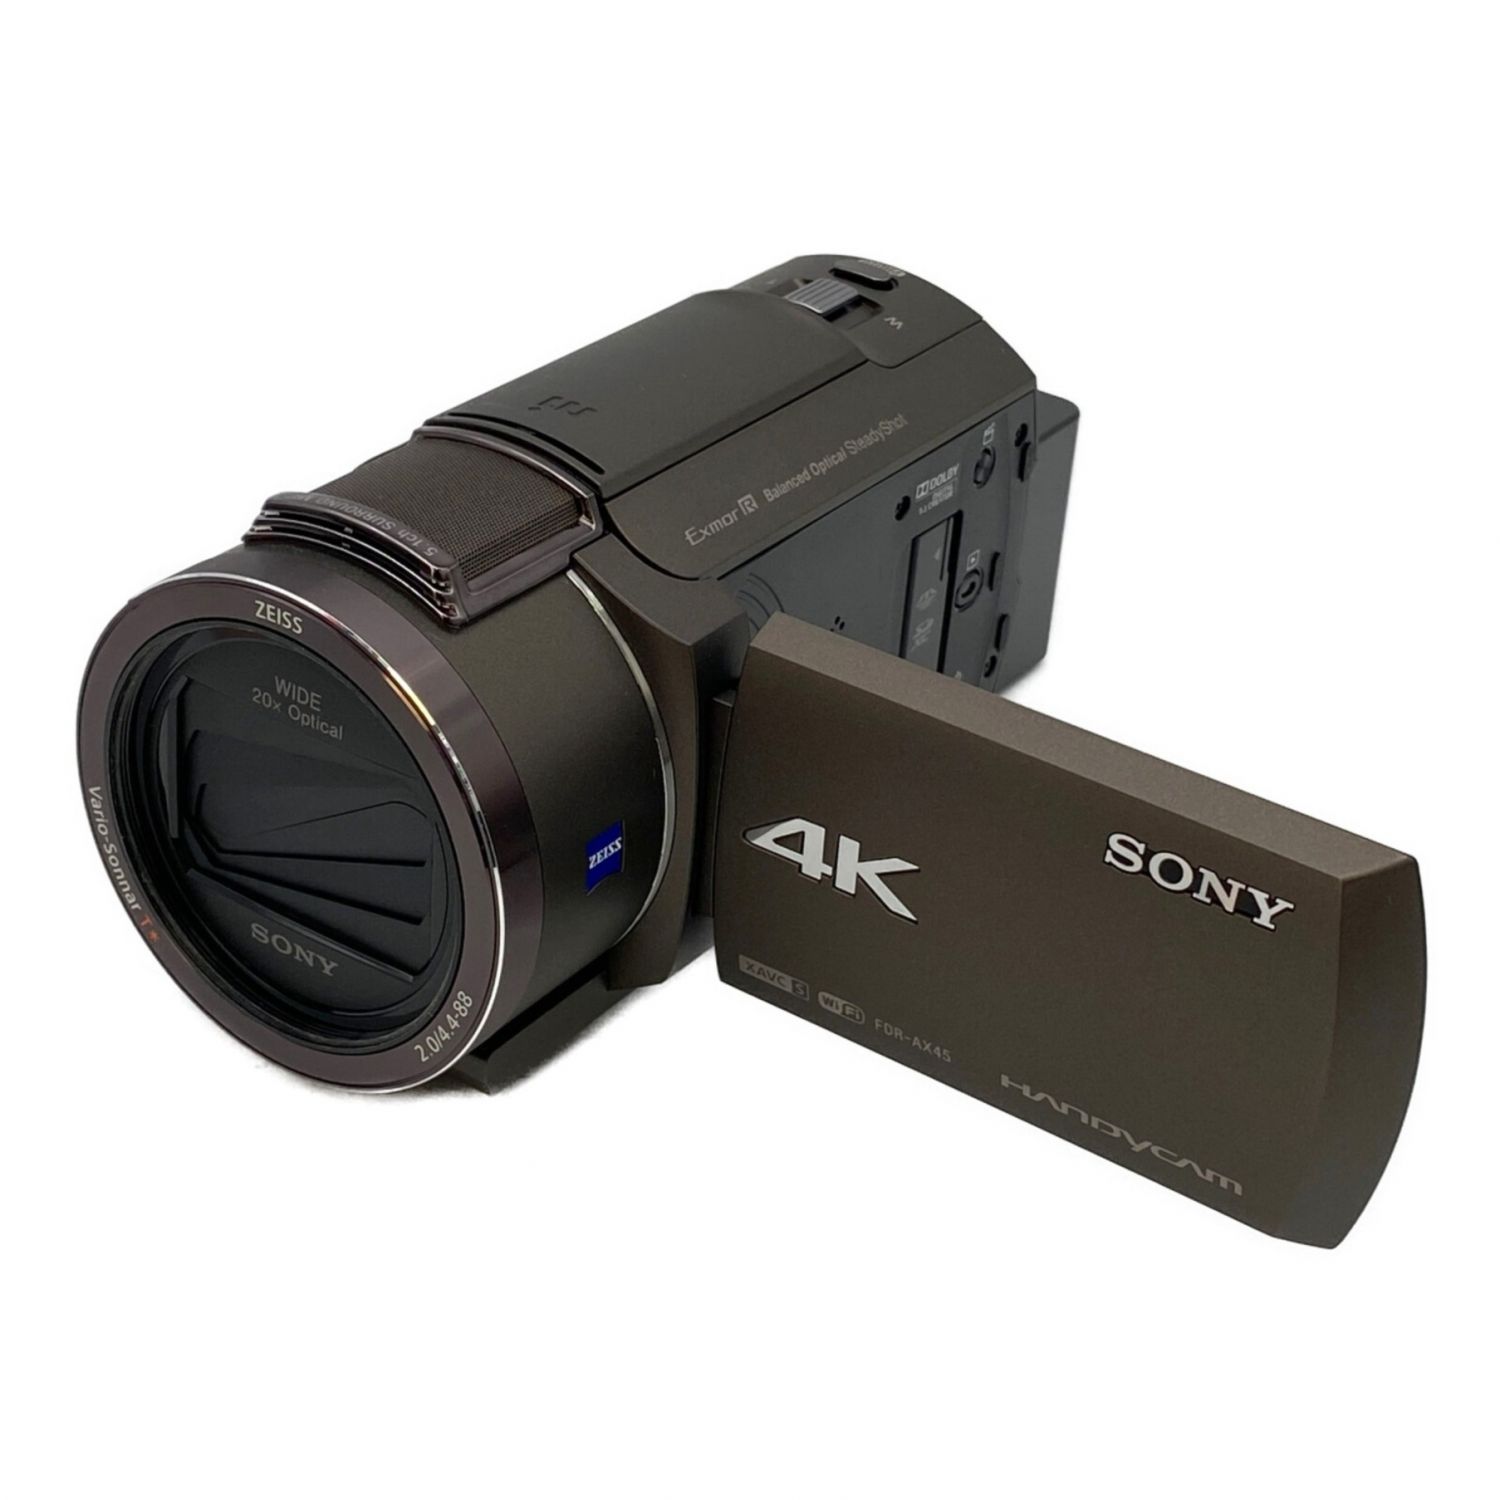 ソニー 4K ビデオカメラ Handycam FDR-AX60 ブラック 内蔵メモリー64GB 光学ズーム20倍 